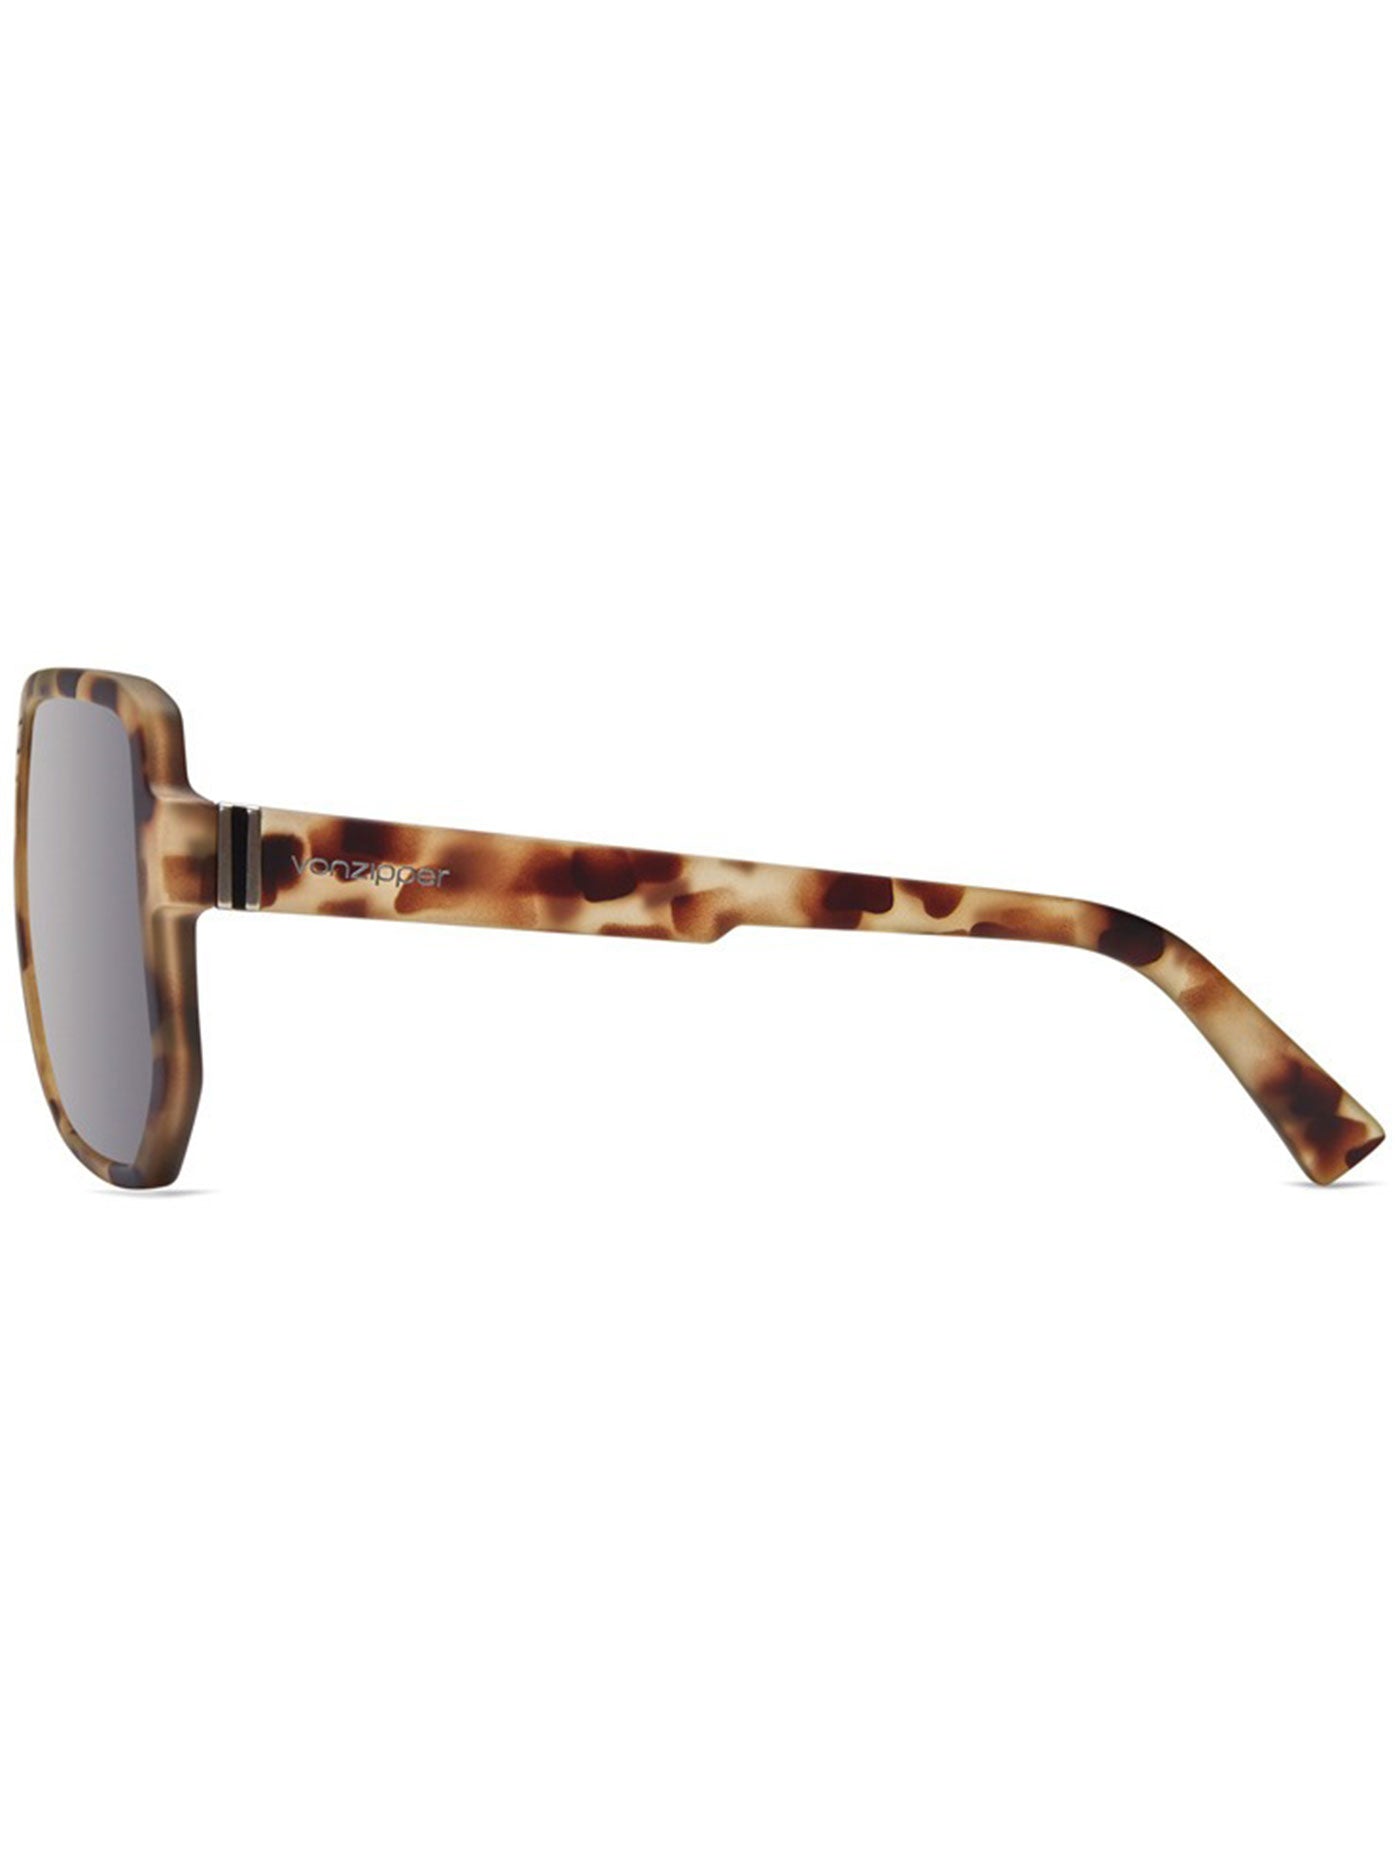 Von Zipper Roller Dusty Turtoise Satin/Grey Sunglasses